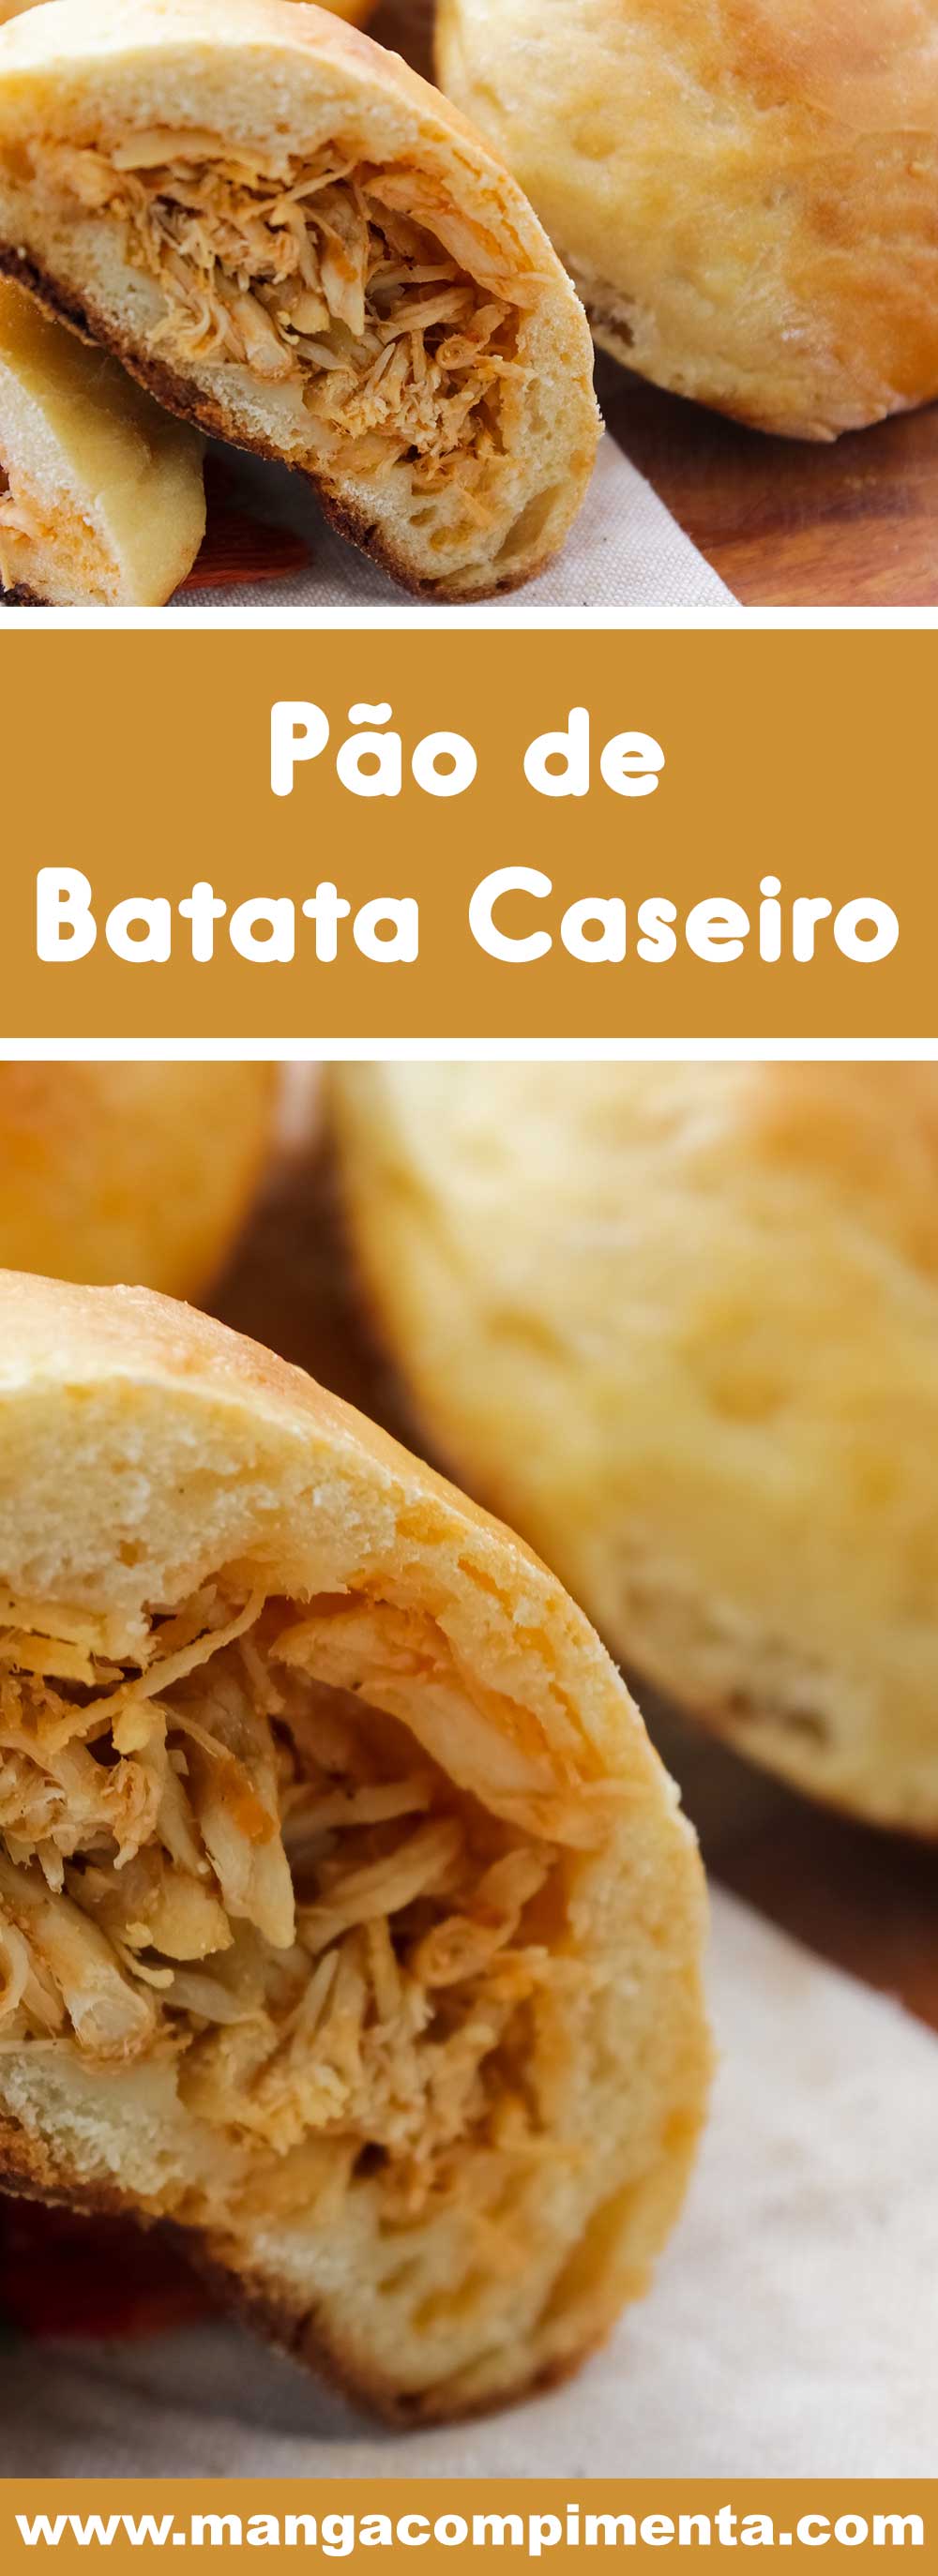 Receita de Pão de Batata Recheado com Frango - Youtube - um lanche delicioso para o final de semana com a família.